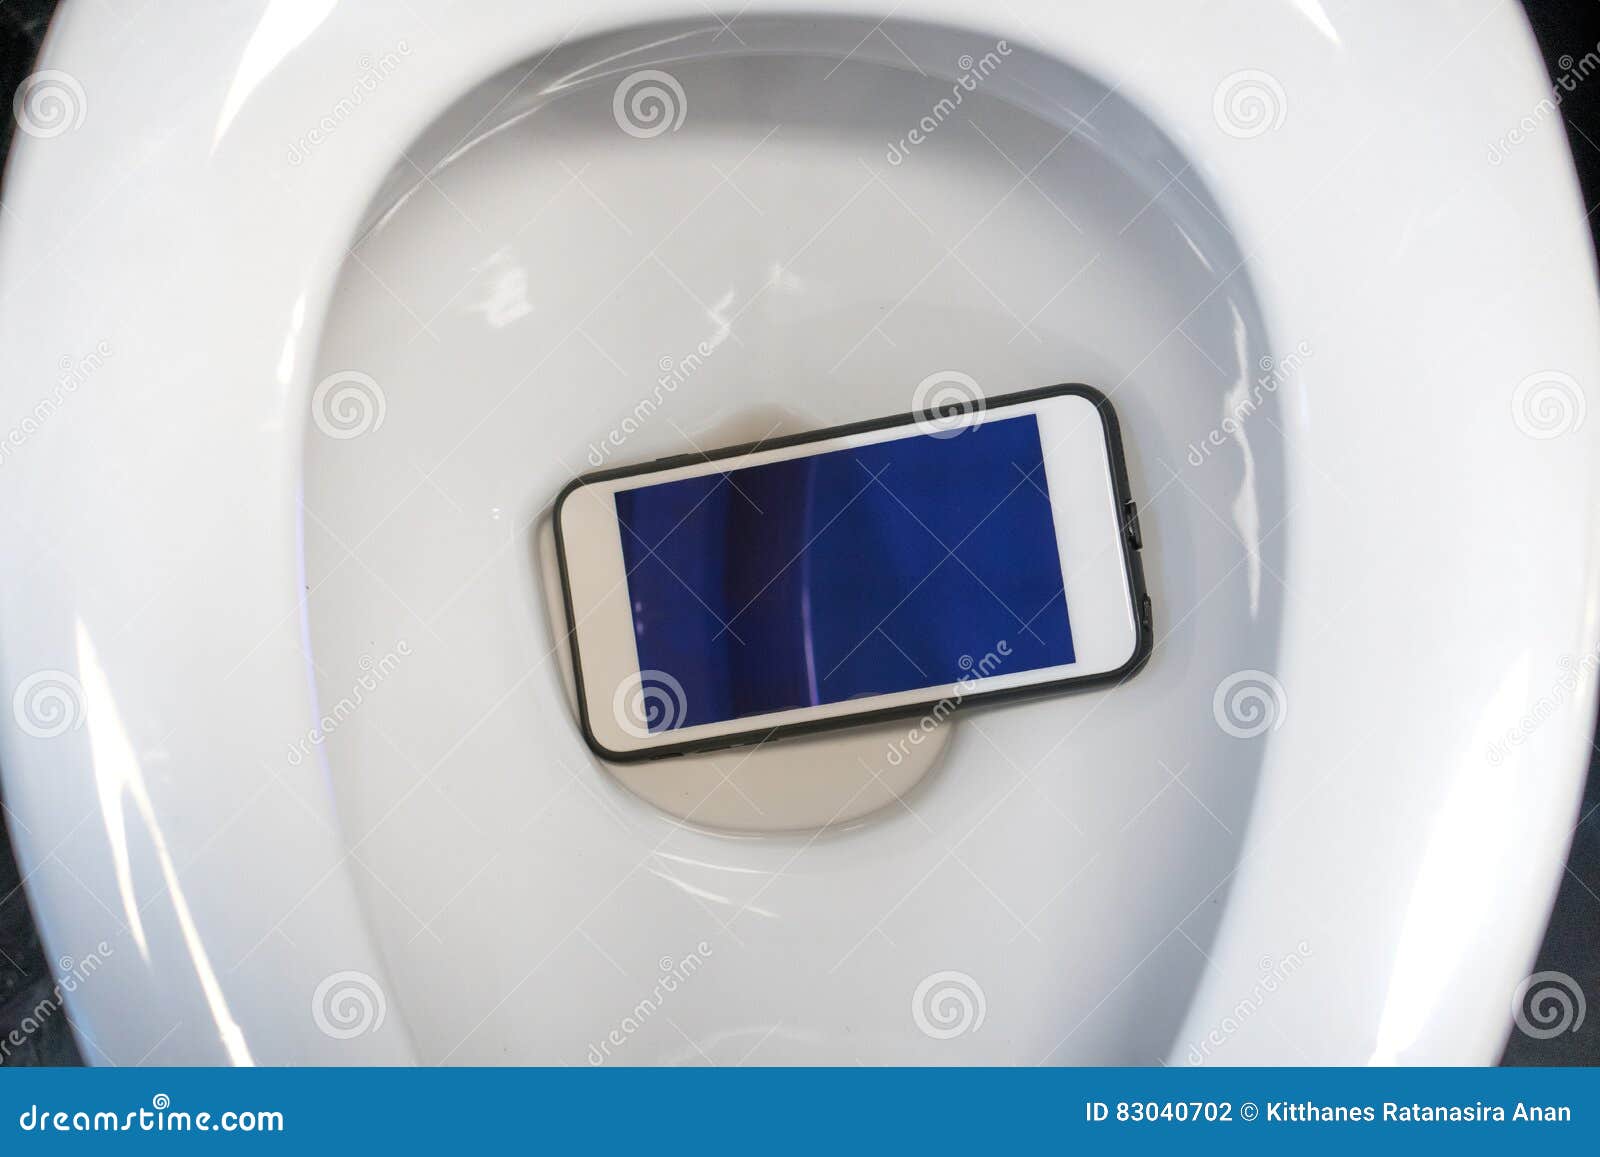 Что в телефоне в туалете делать. Унитаз смартфон. Айфон в туалете.